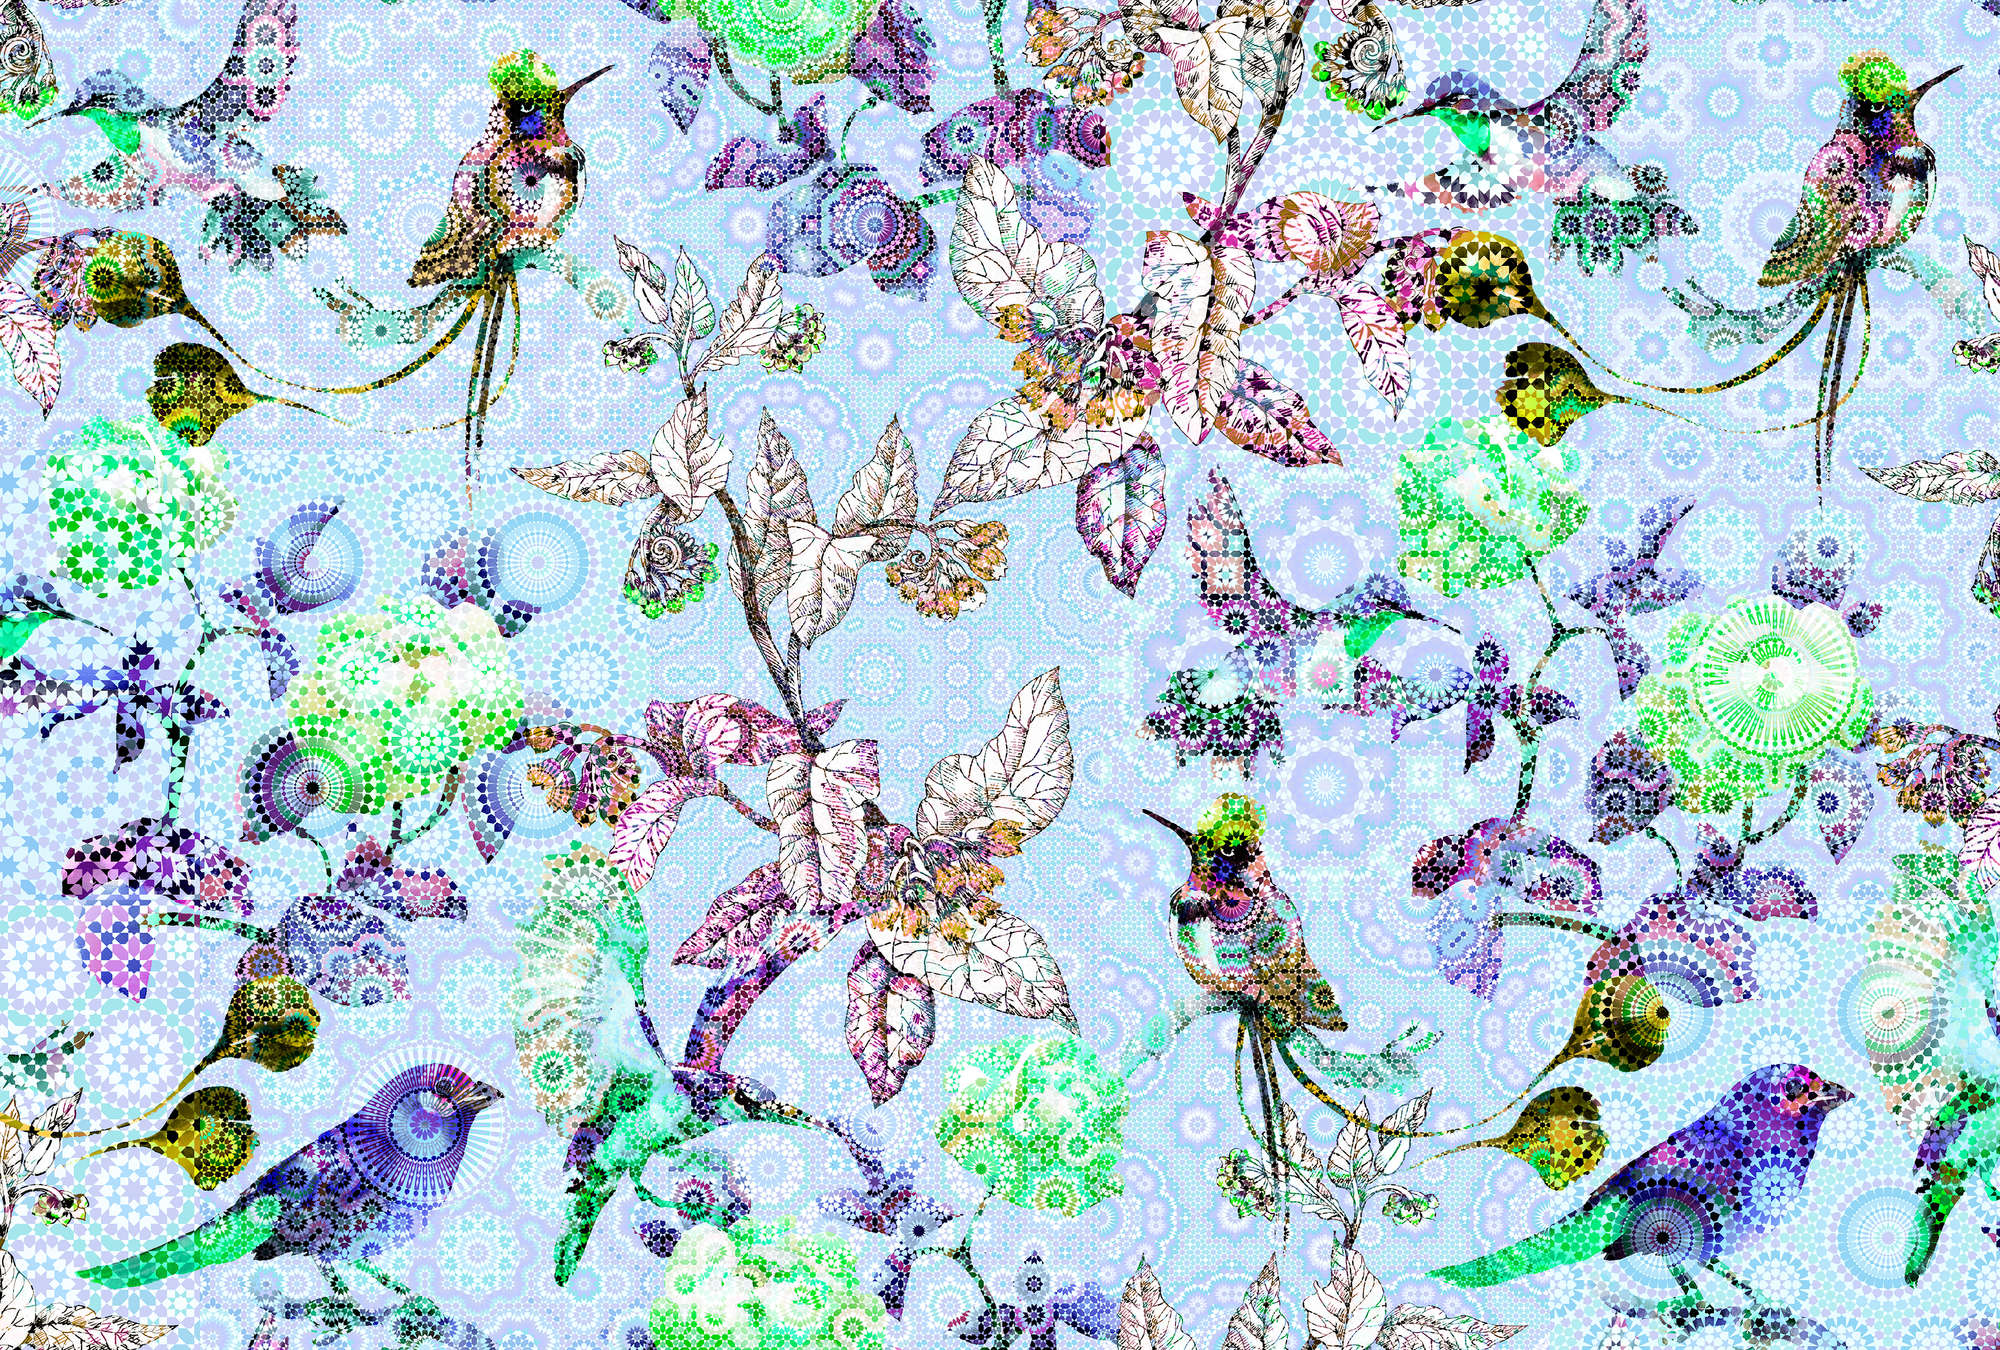             Mosaic Style Bloemen & Vogels Behang - Blauw, Groen
        